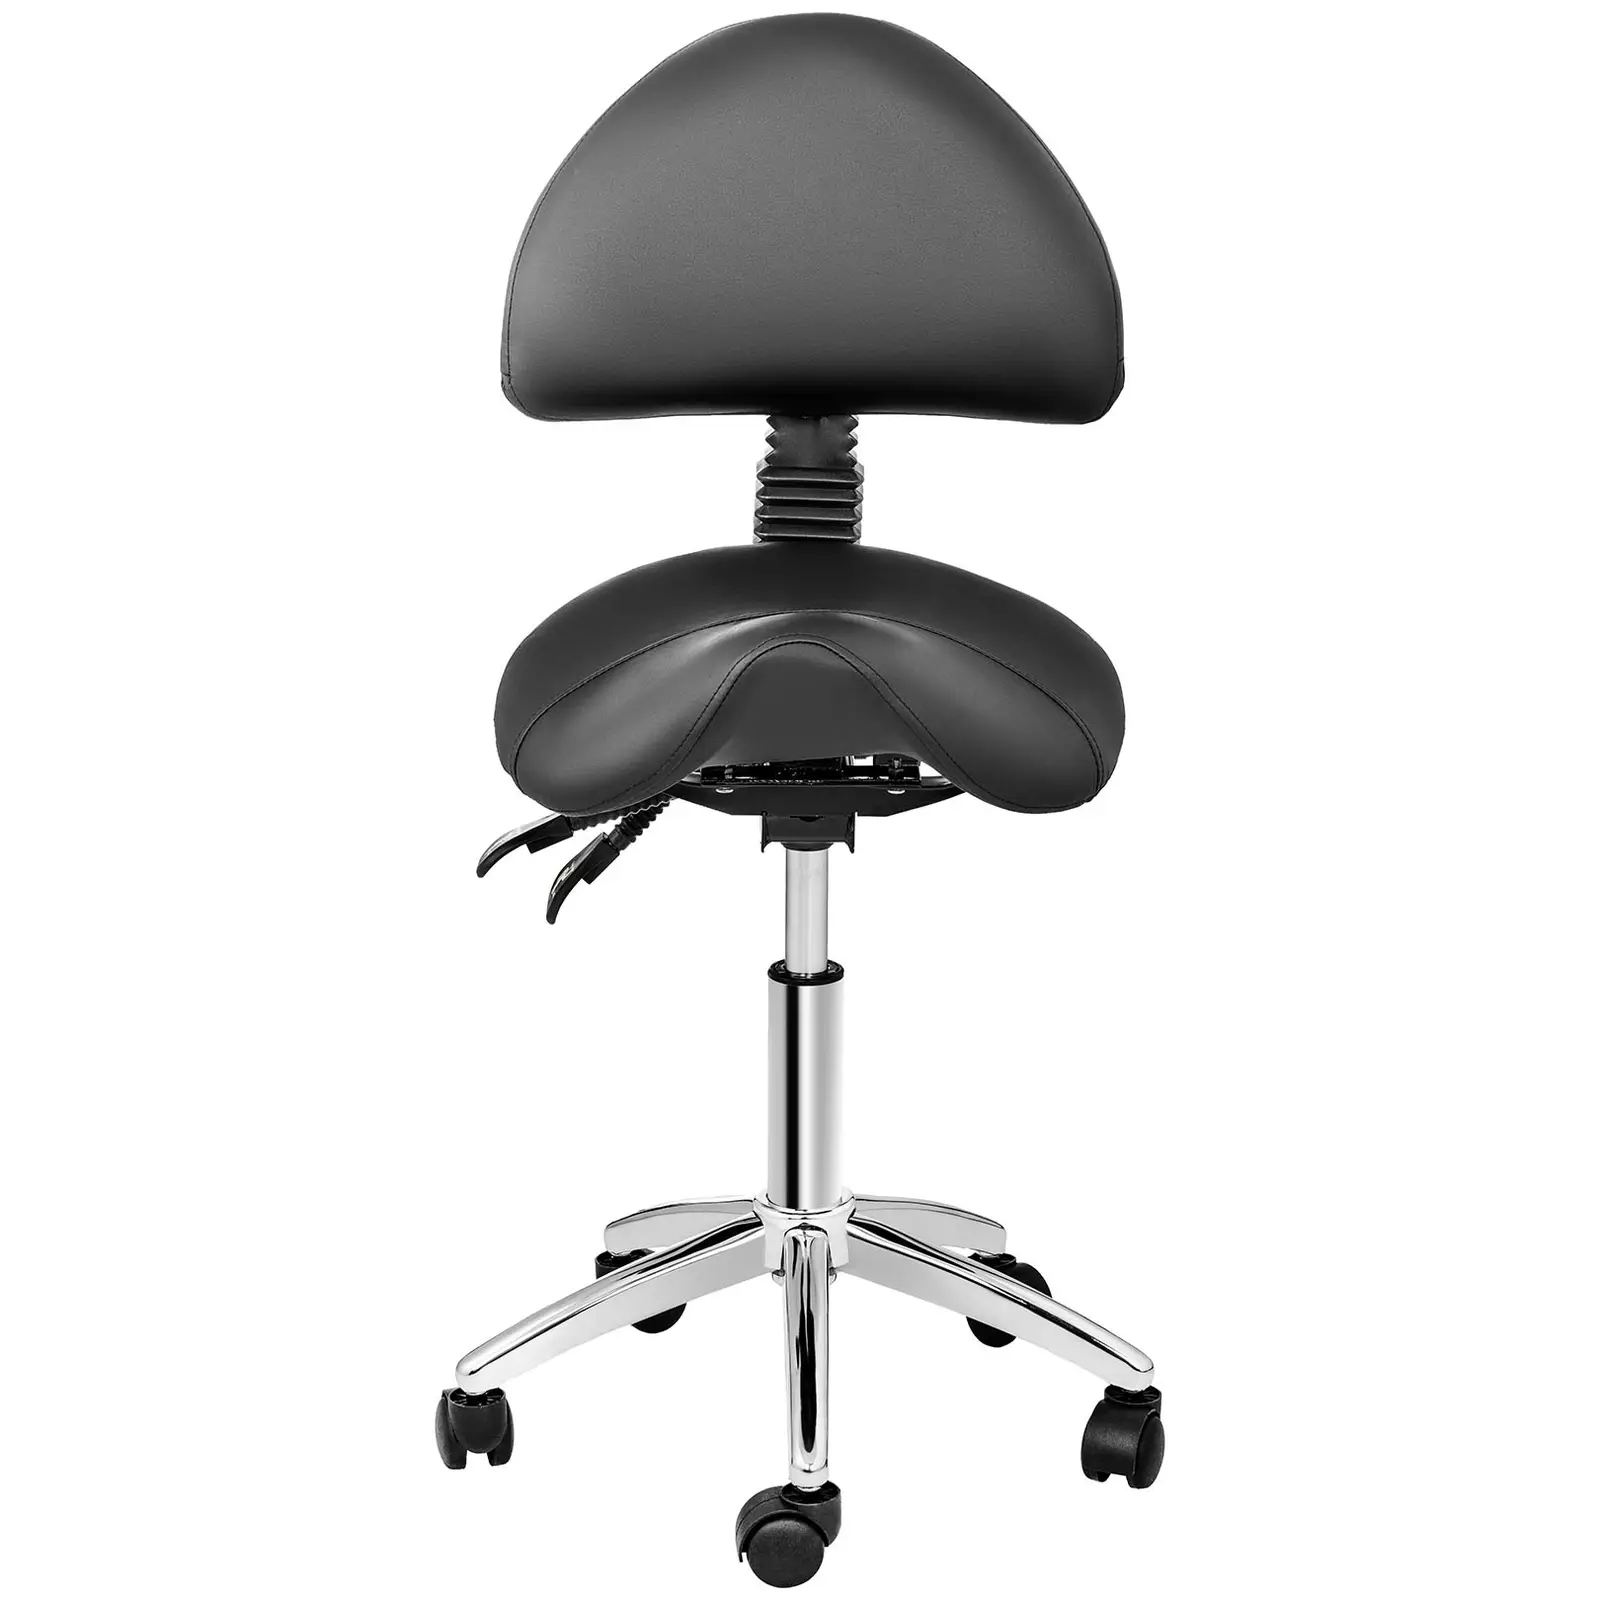 Sedlová židle - 550-690 mm - 150 kg - Černá